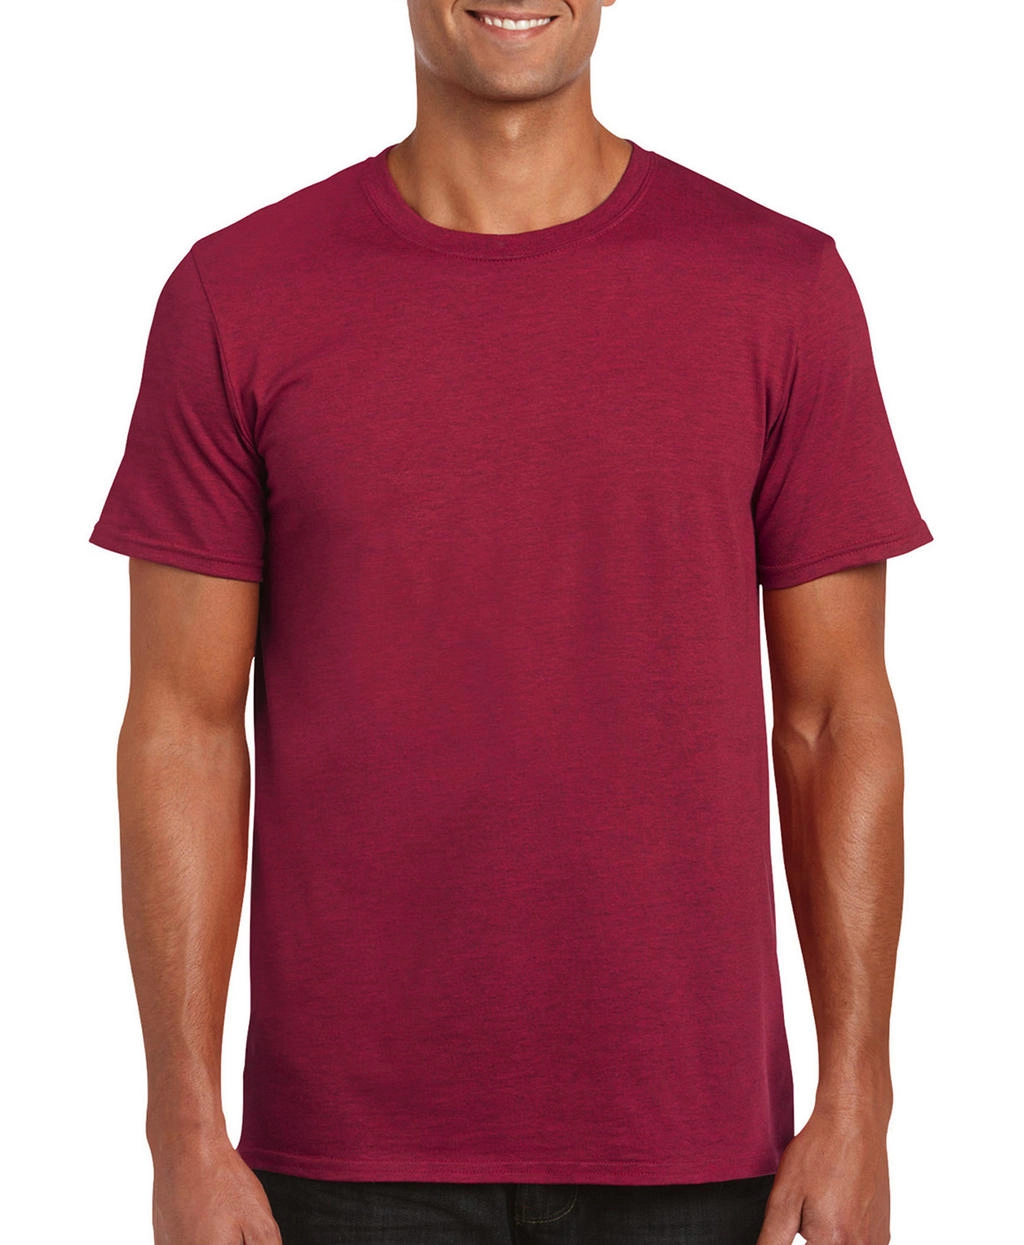 Softstyle® Ring Spun T-Shirt zum Besticken und Bedrucken in der Farbe Antique Cherry Red mit Ihren Logo, Schriftzug oder Motiv.